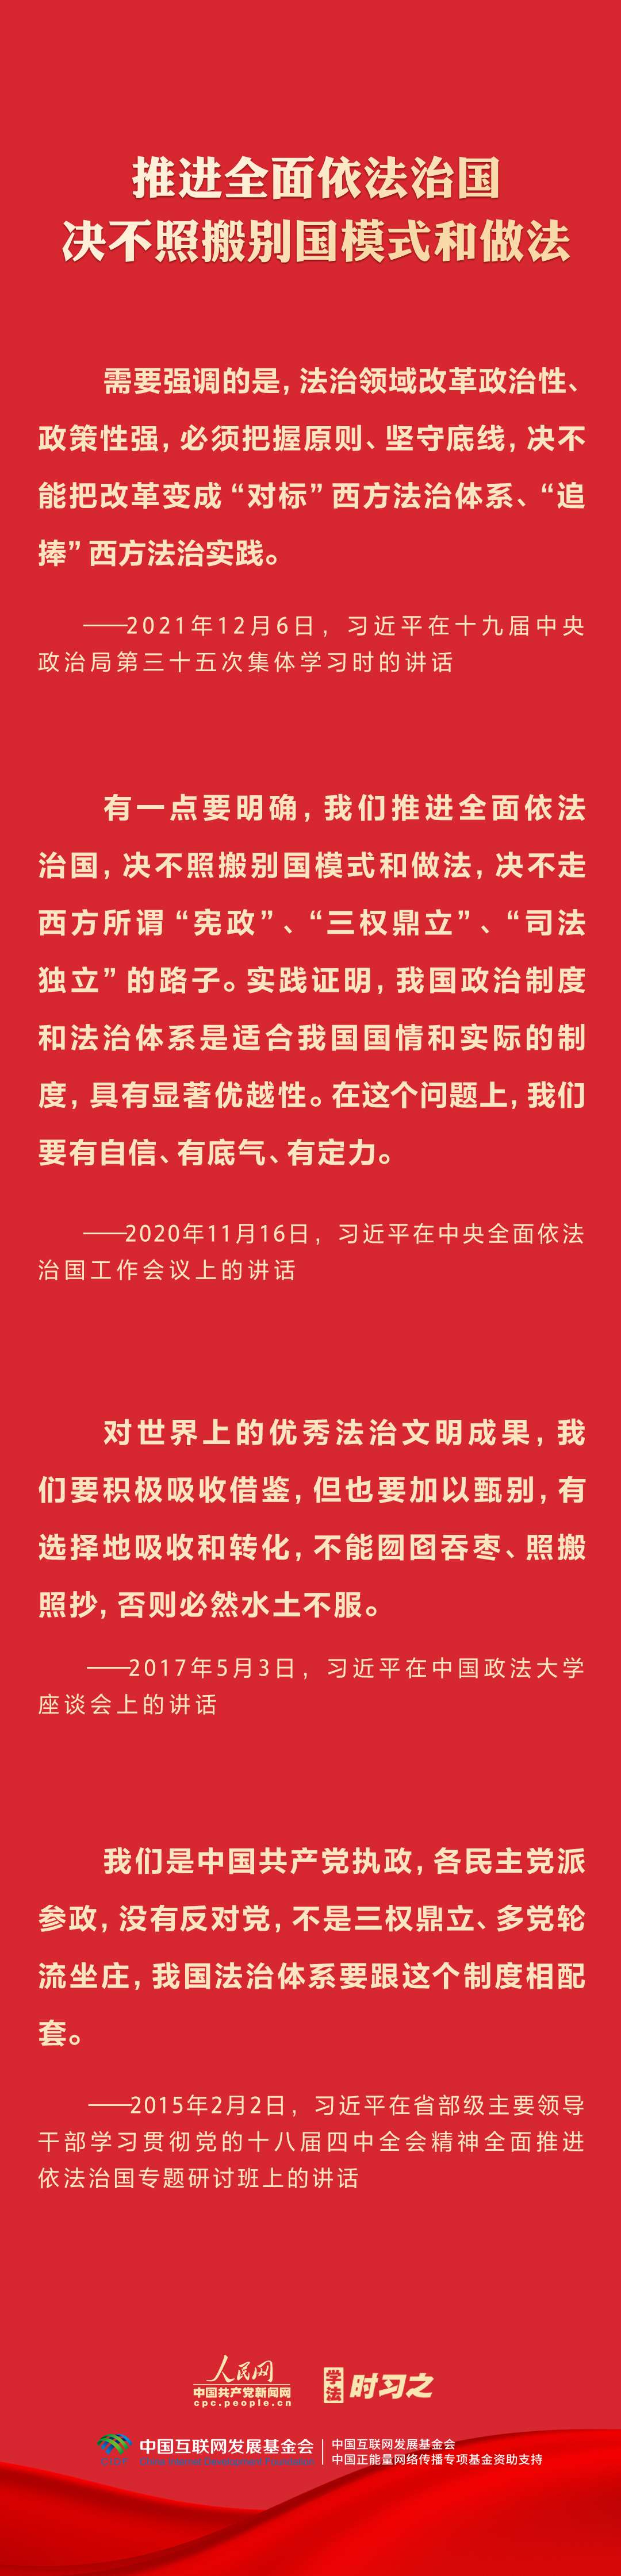 坚持中国特色社会主义法治道路3.jpg